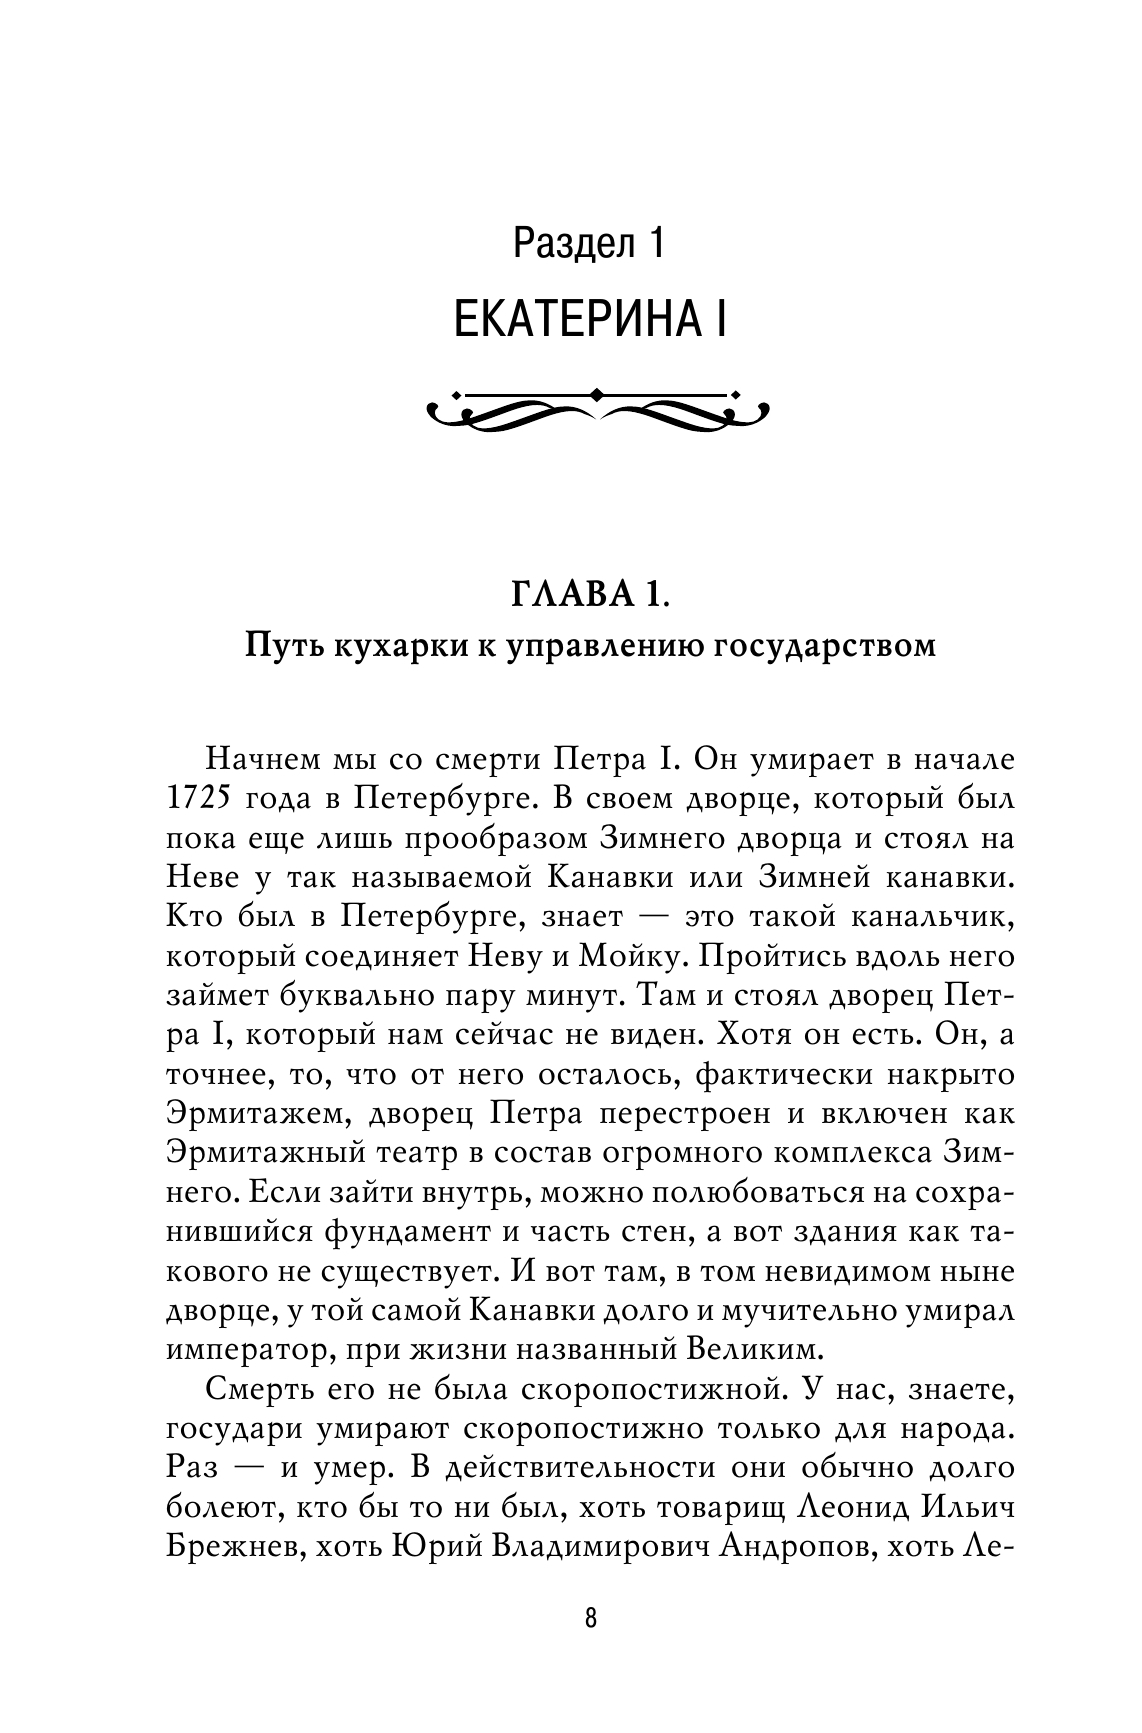 Рассказы из русской истории. XVIII век 7